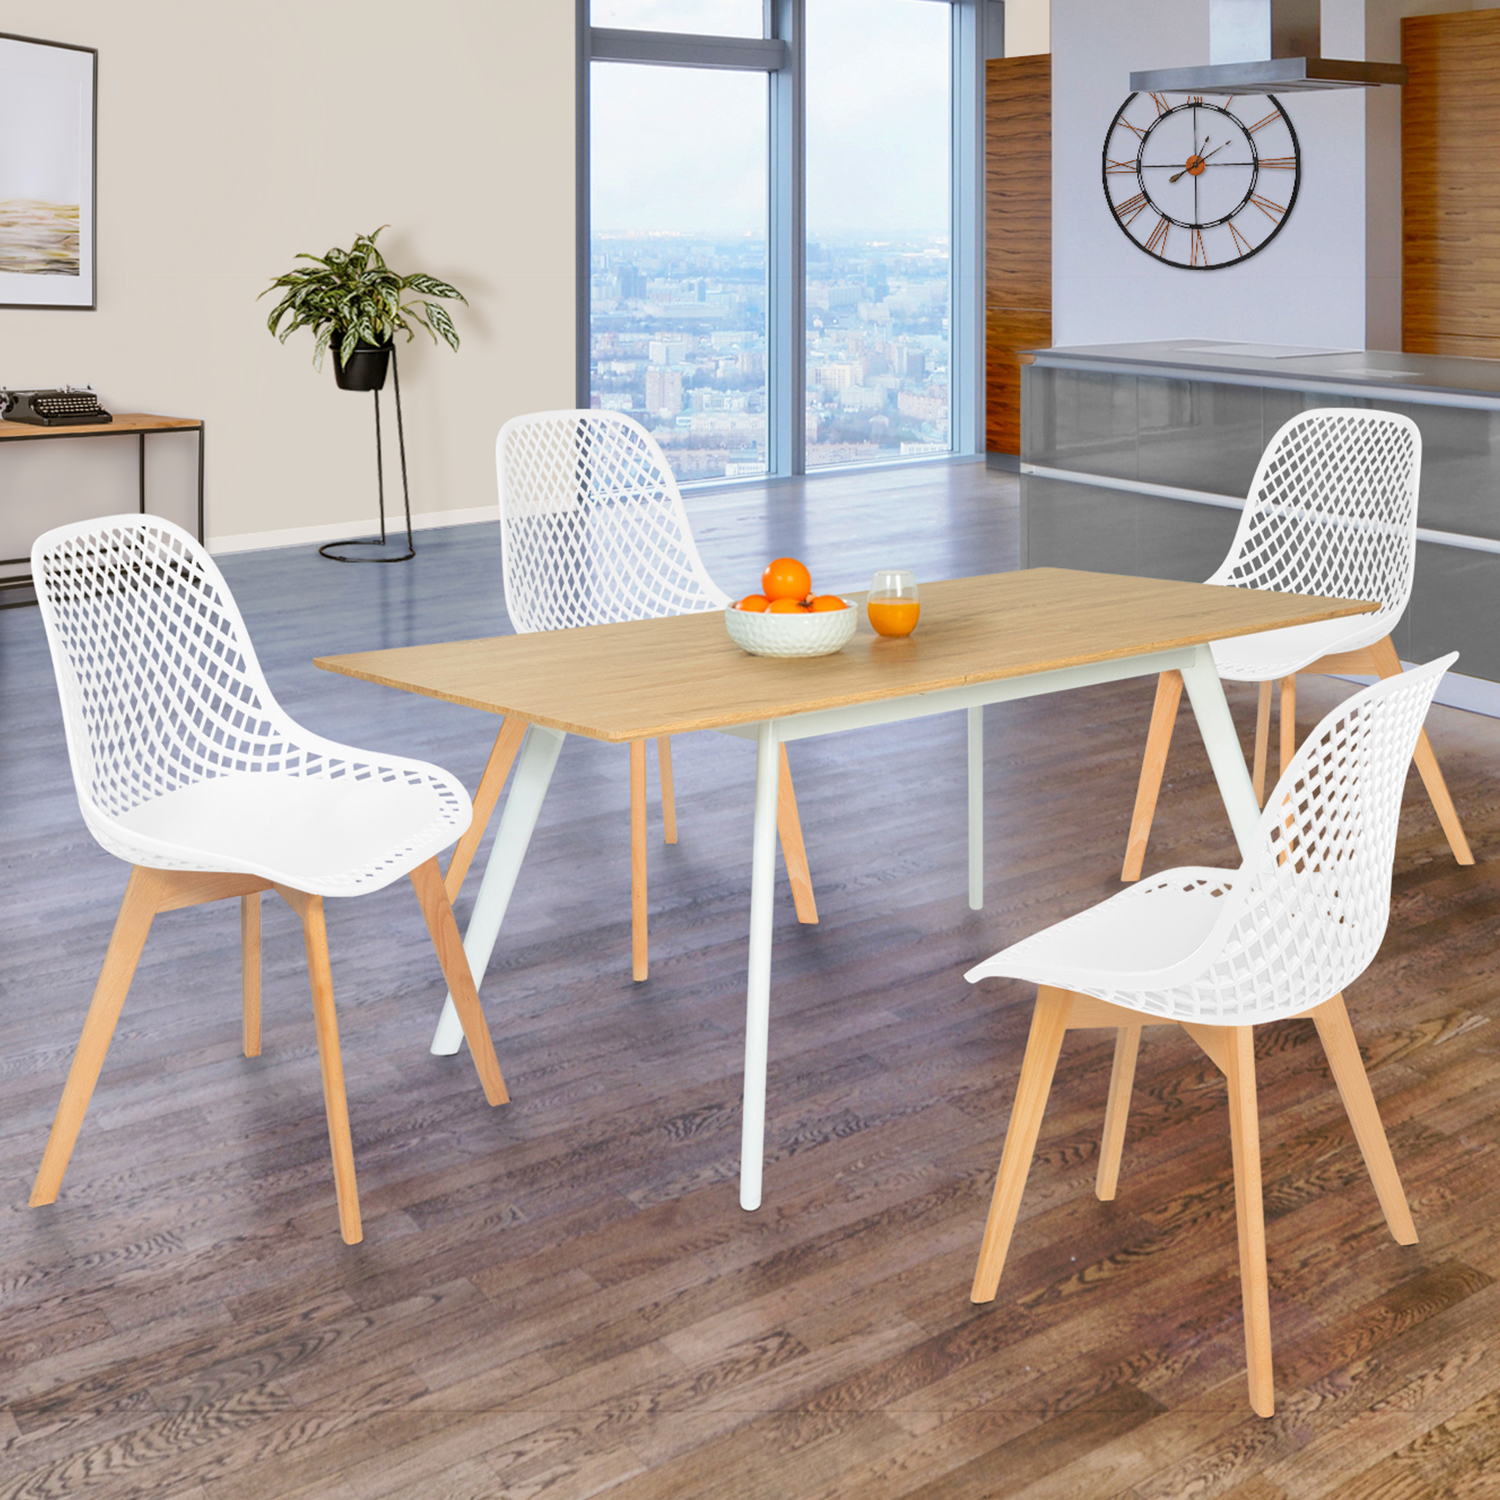 Chaise scandinave Halmstad blanche similicuir 4 pieds bois salle à manger  /attente cuisine réception